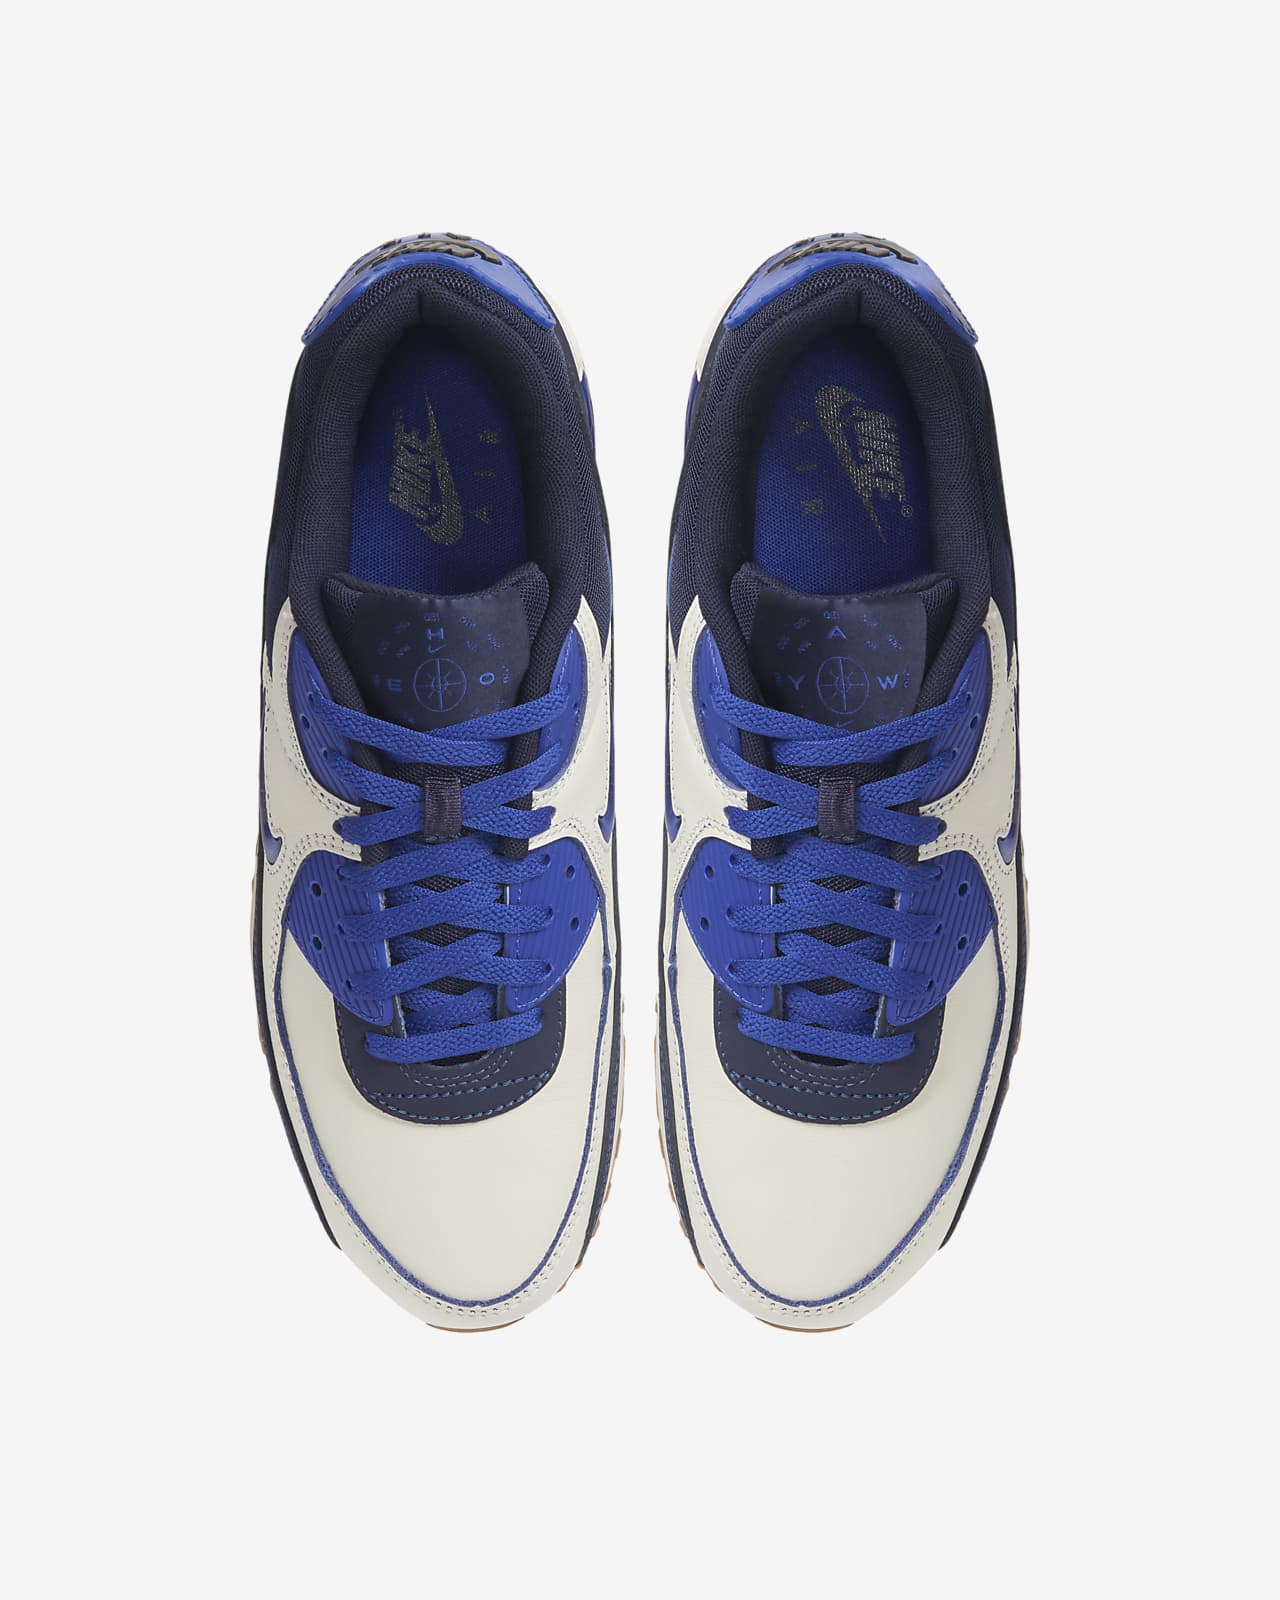 Air Max 90 Premium Men's Shoe. Nike ID